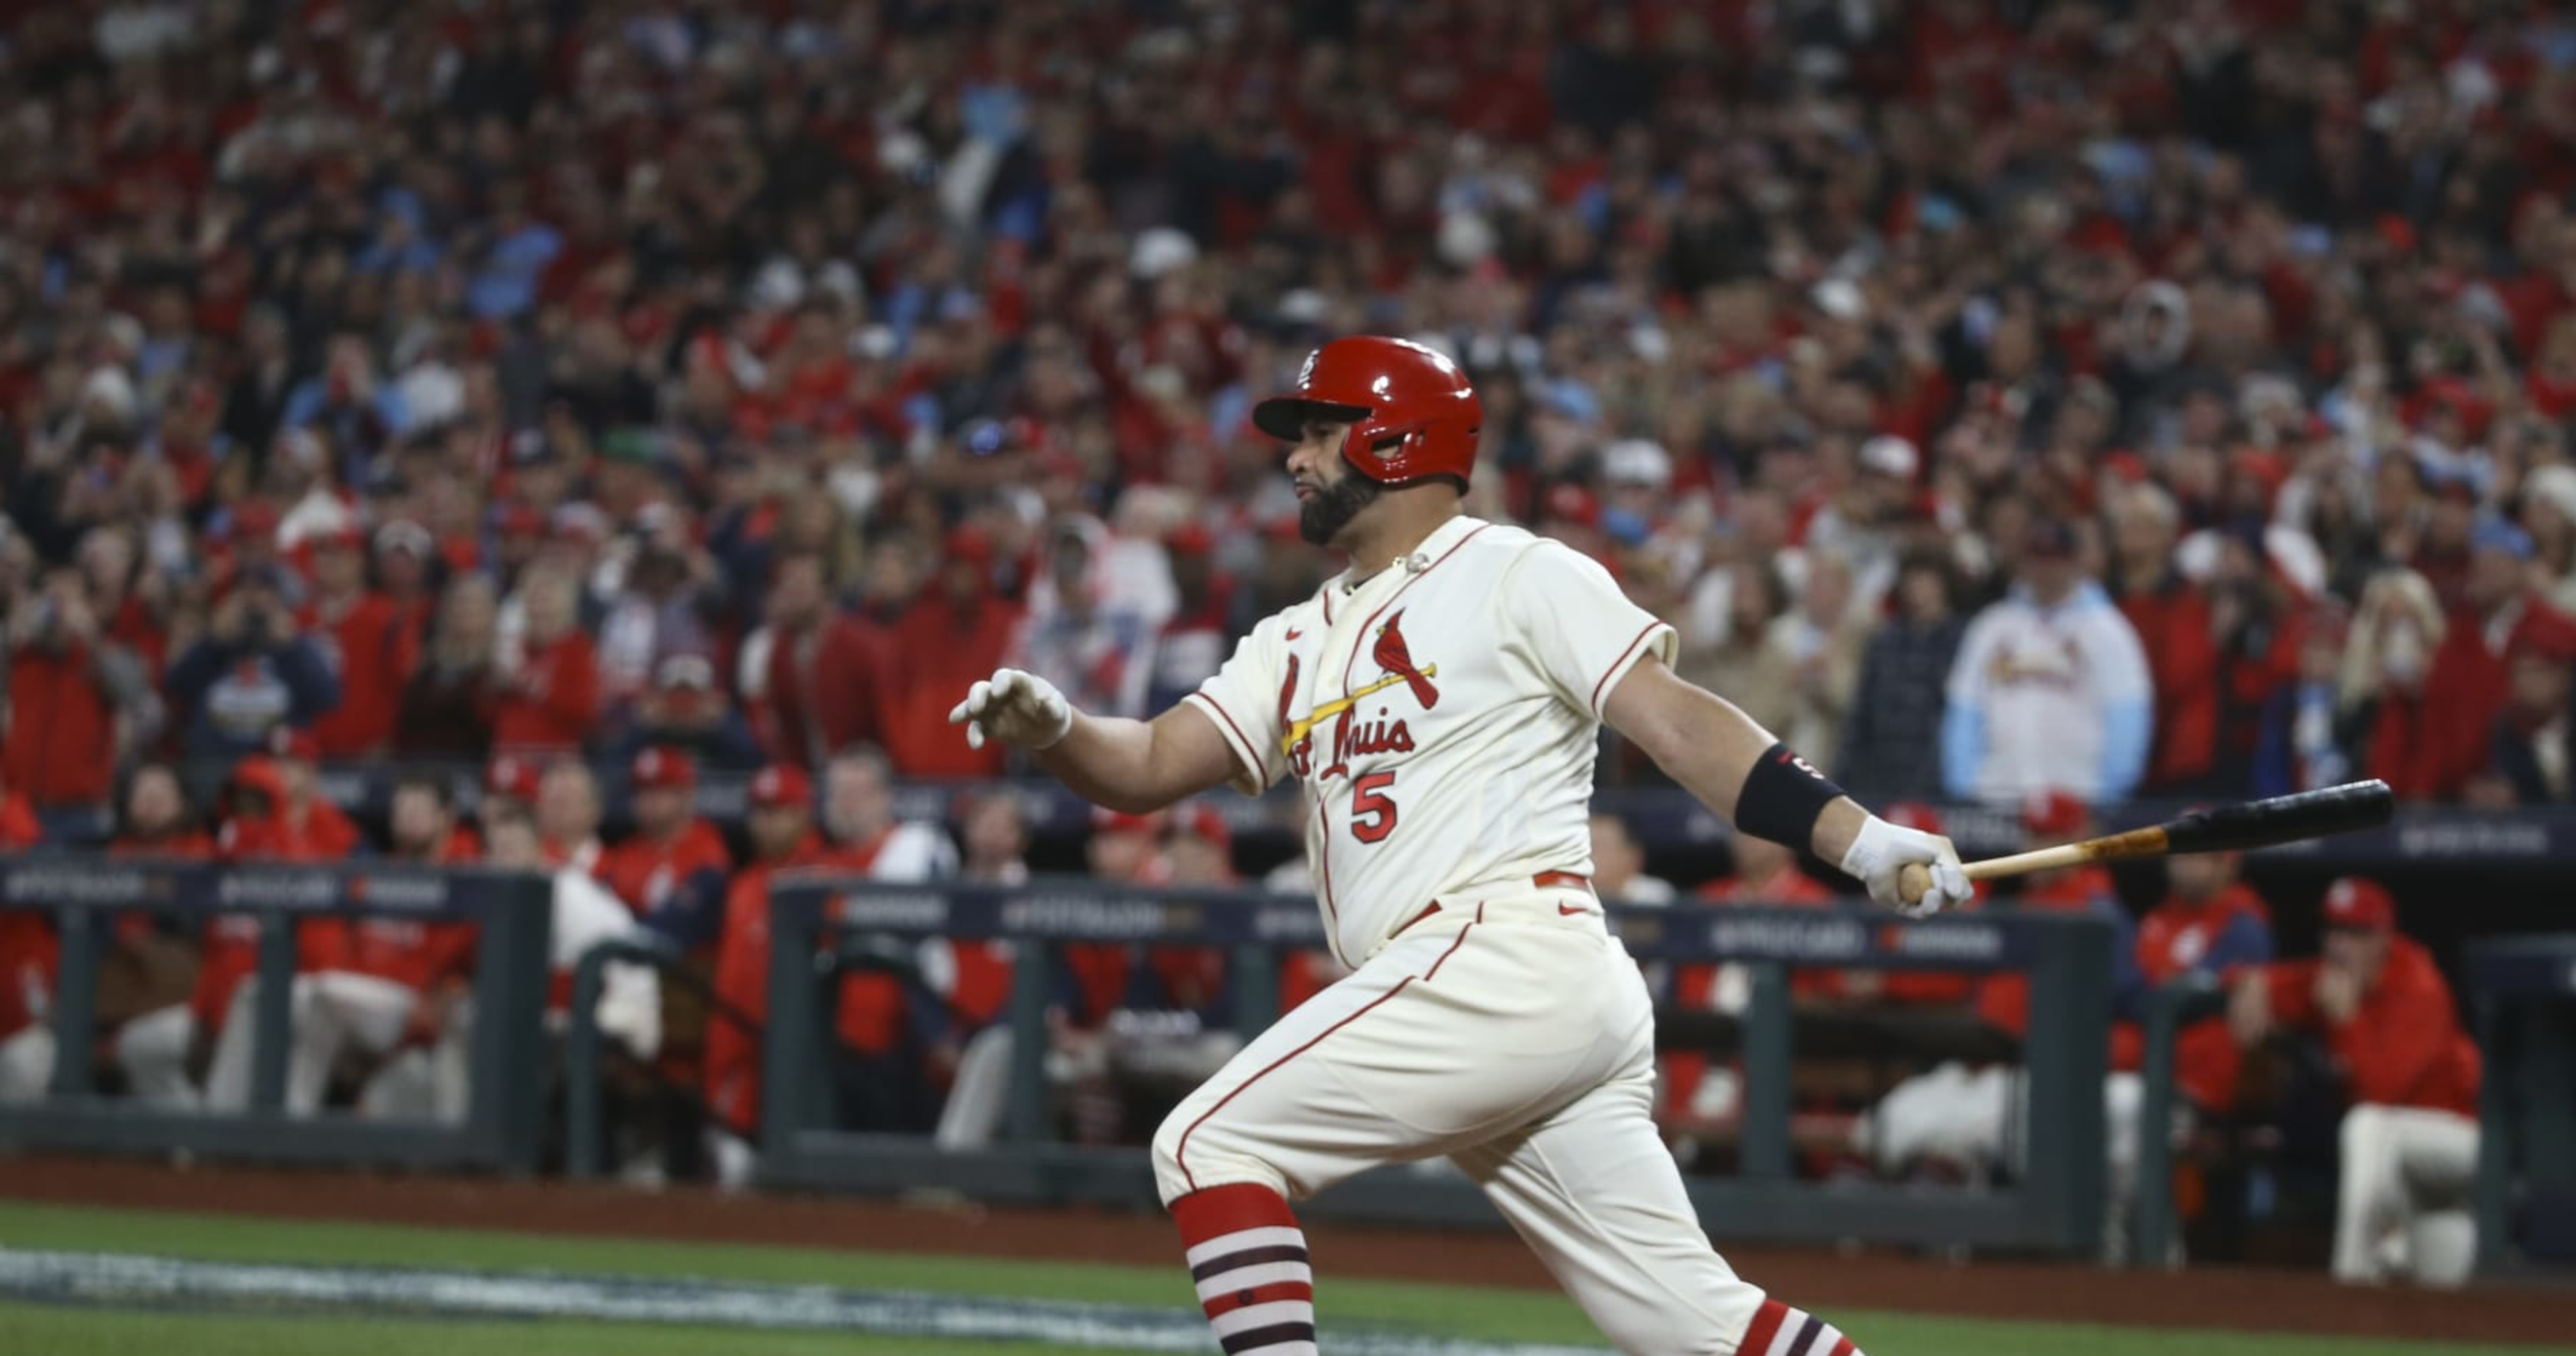 Albert Pujols home run record: Odds, best bet on Cardinals legend